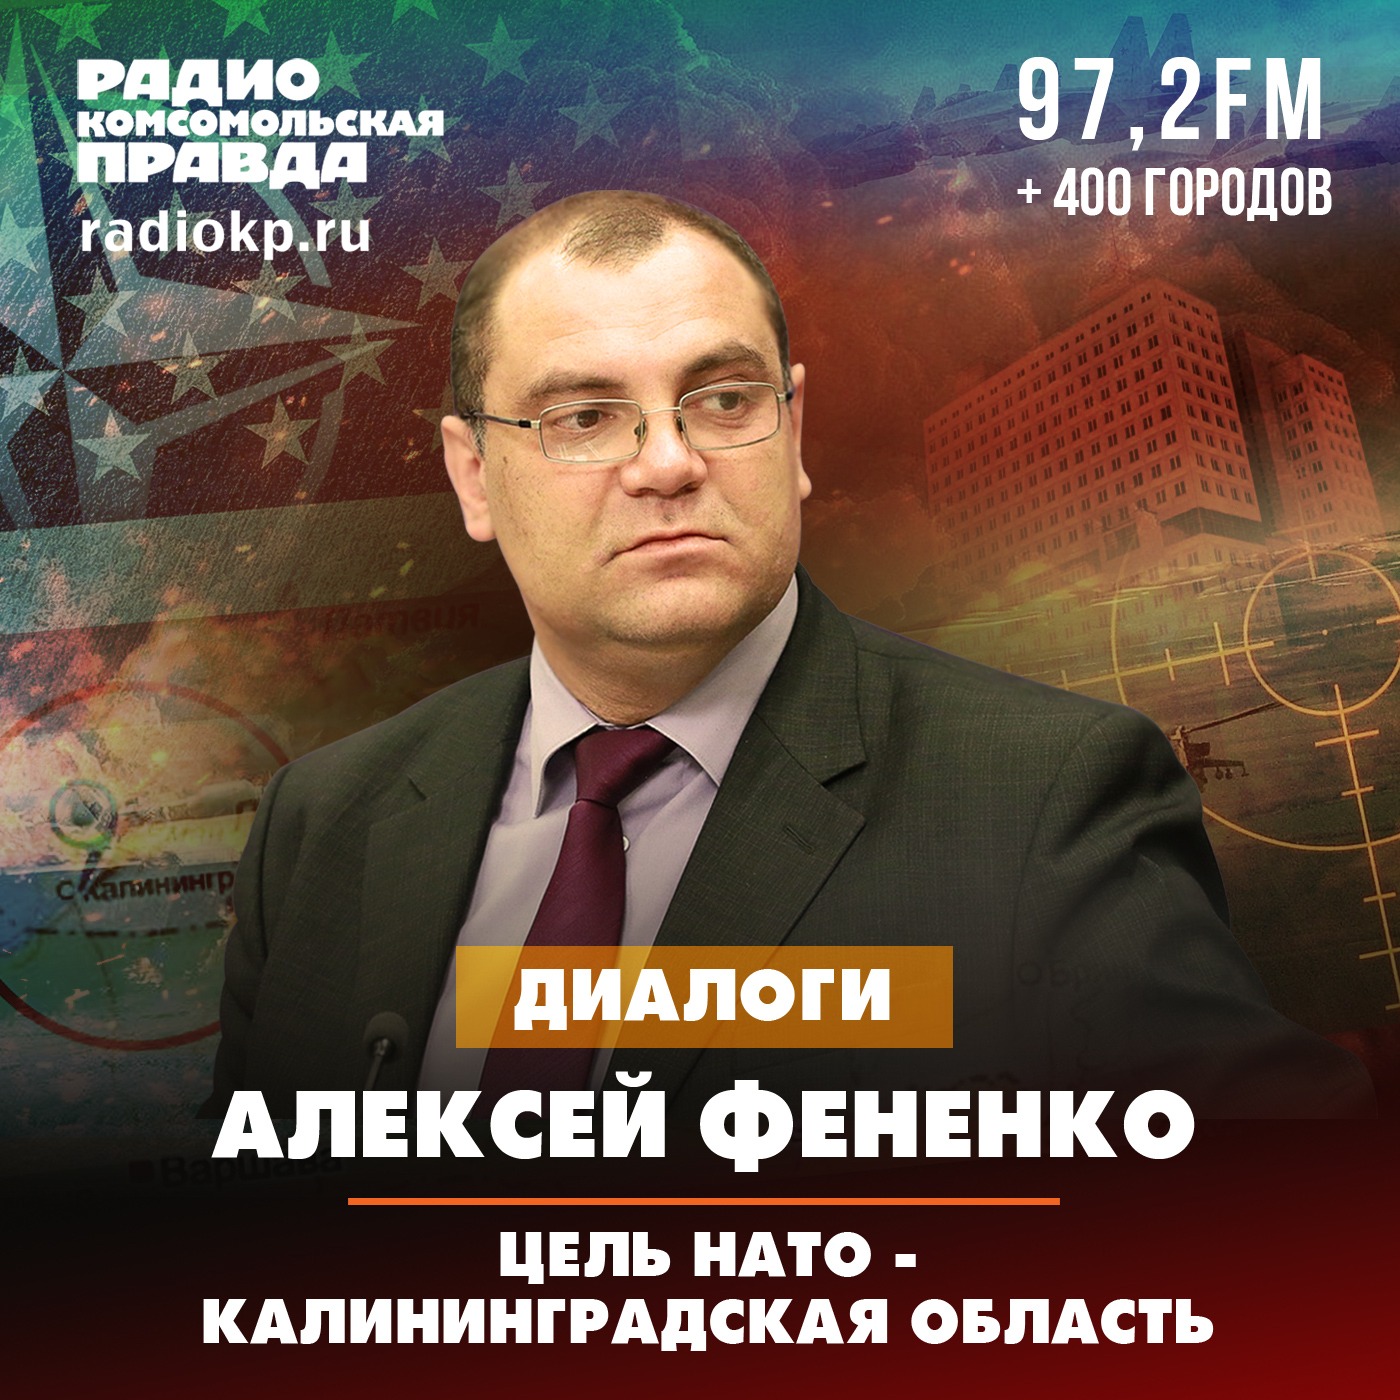 Алексей Фененко: Цель НАТО - Калининградская область